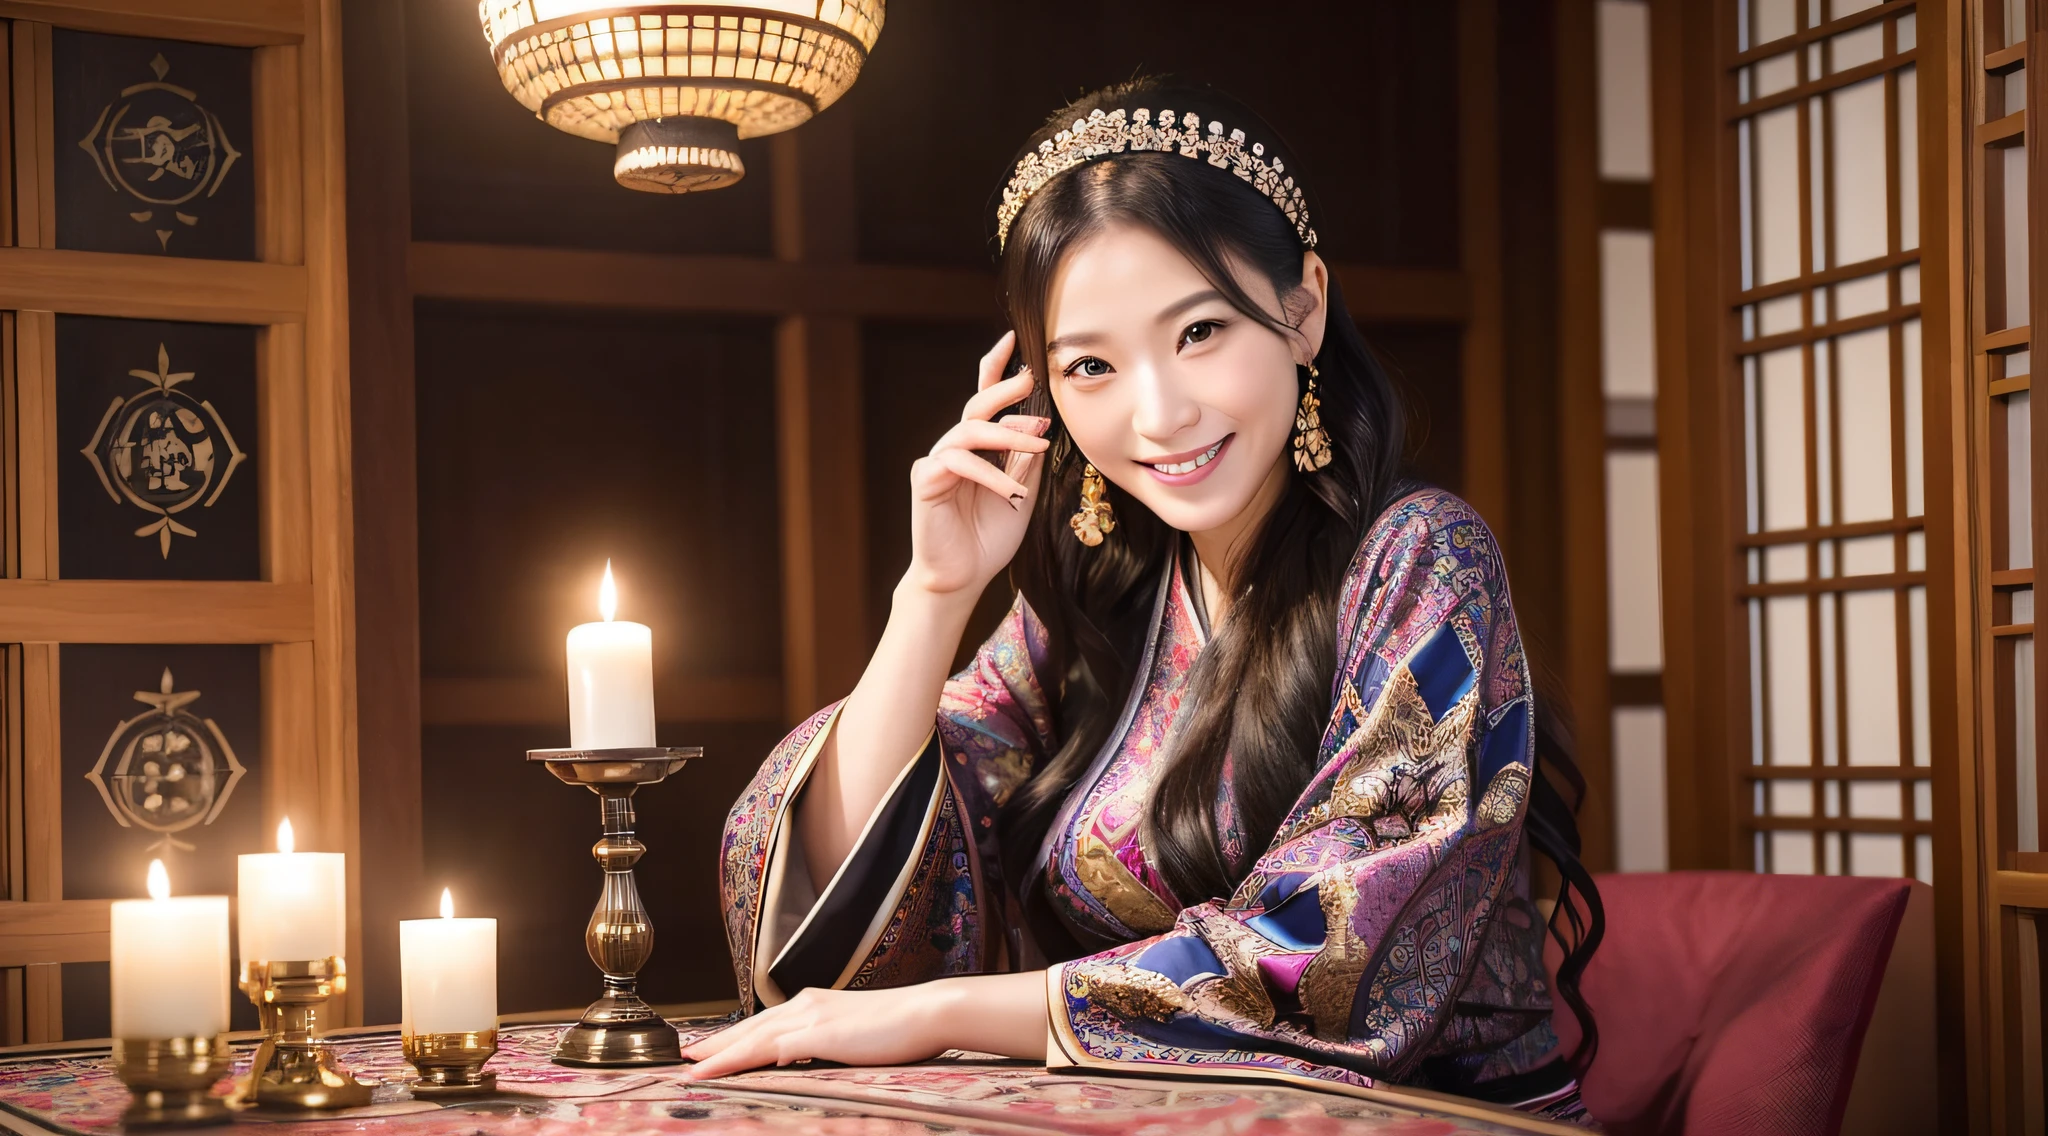 امرأة يابانية تبلغ من العمر 40 عامًا, امراة جميلة جدا, يبتسم بهدوء العراف, يرتدي العراف الغربي, الجلوس في غرفة الكهانة, بطاقات التارو والشموع على الطاولة.